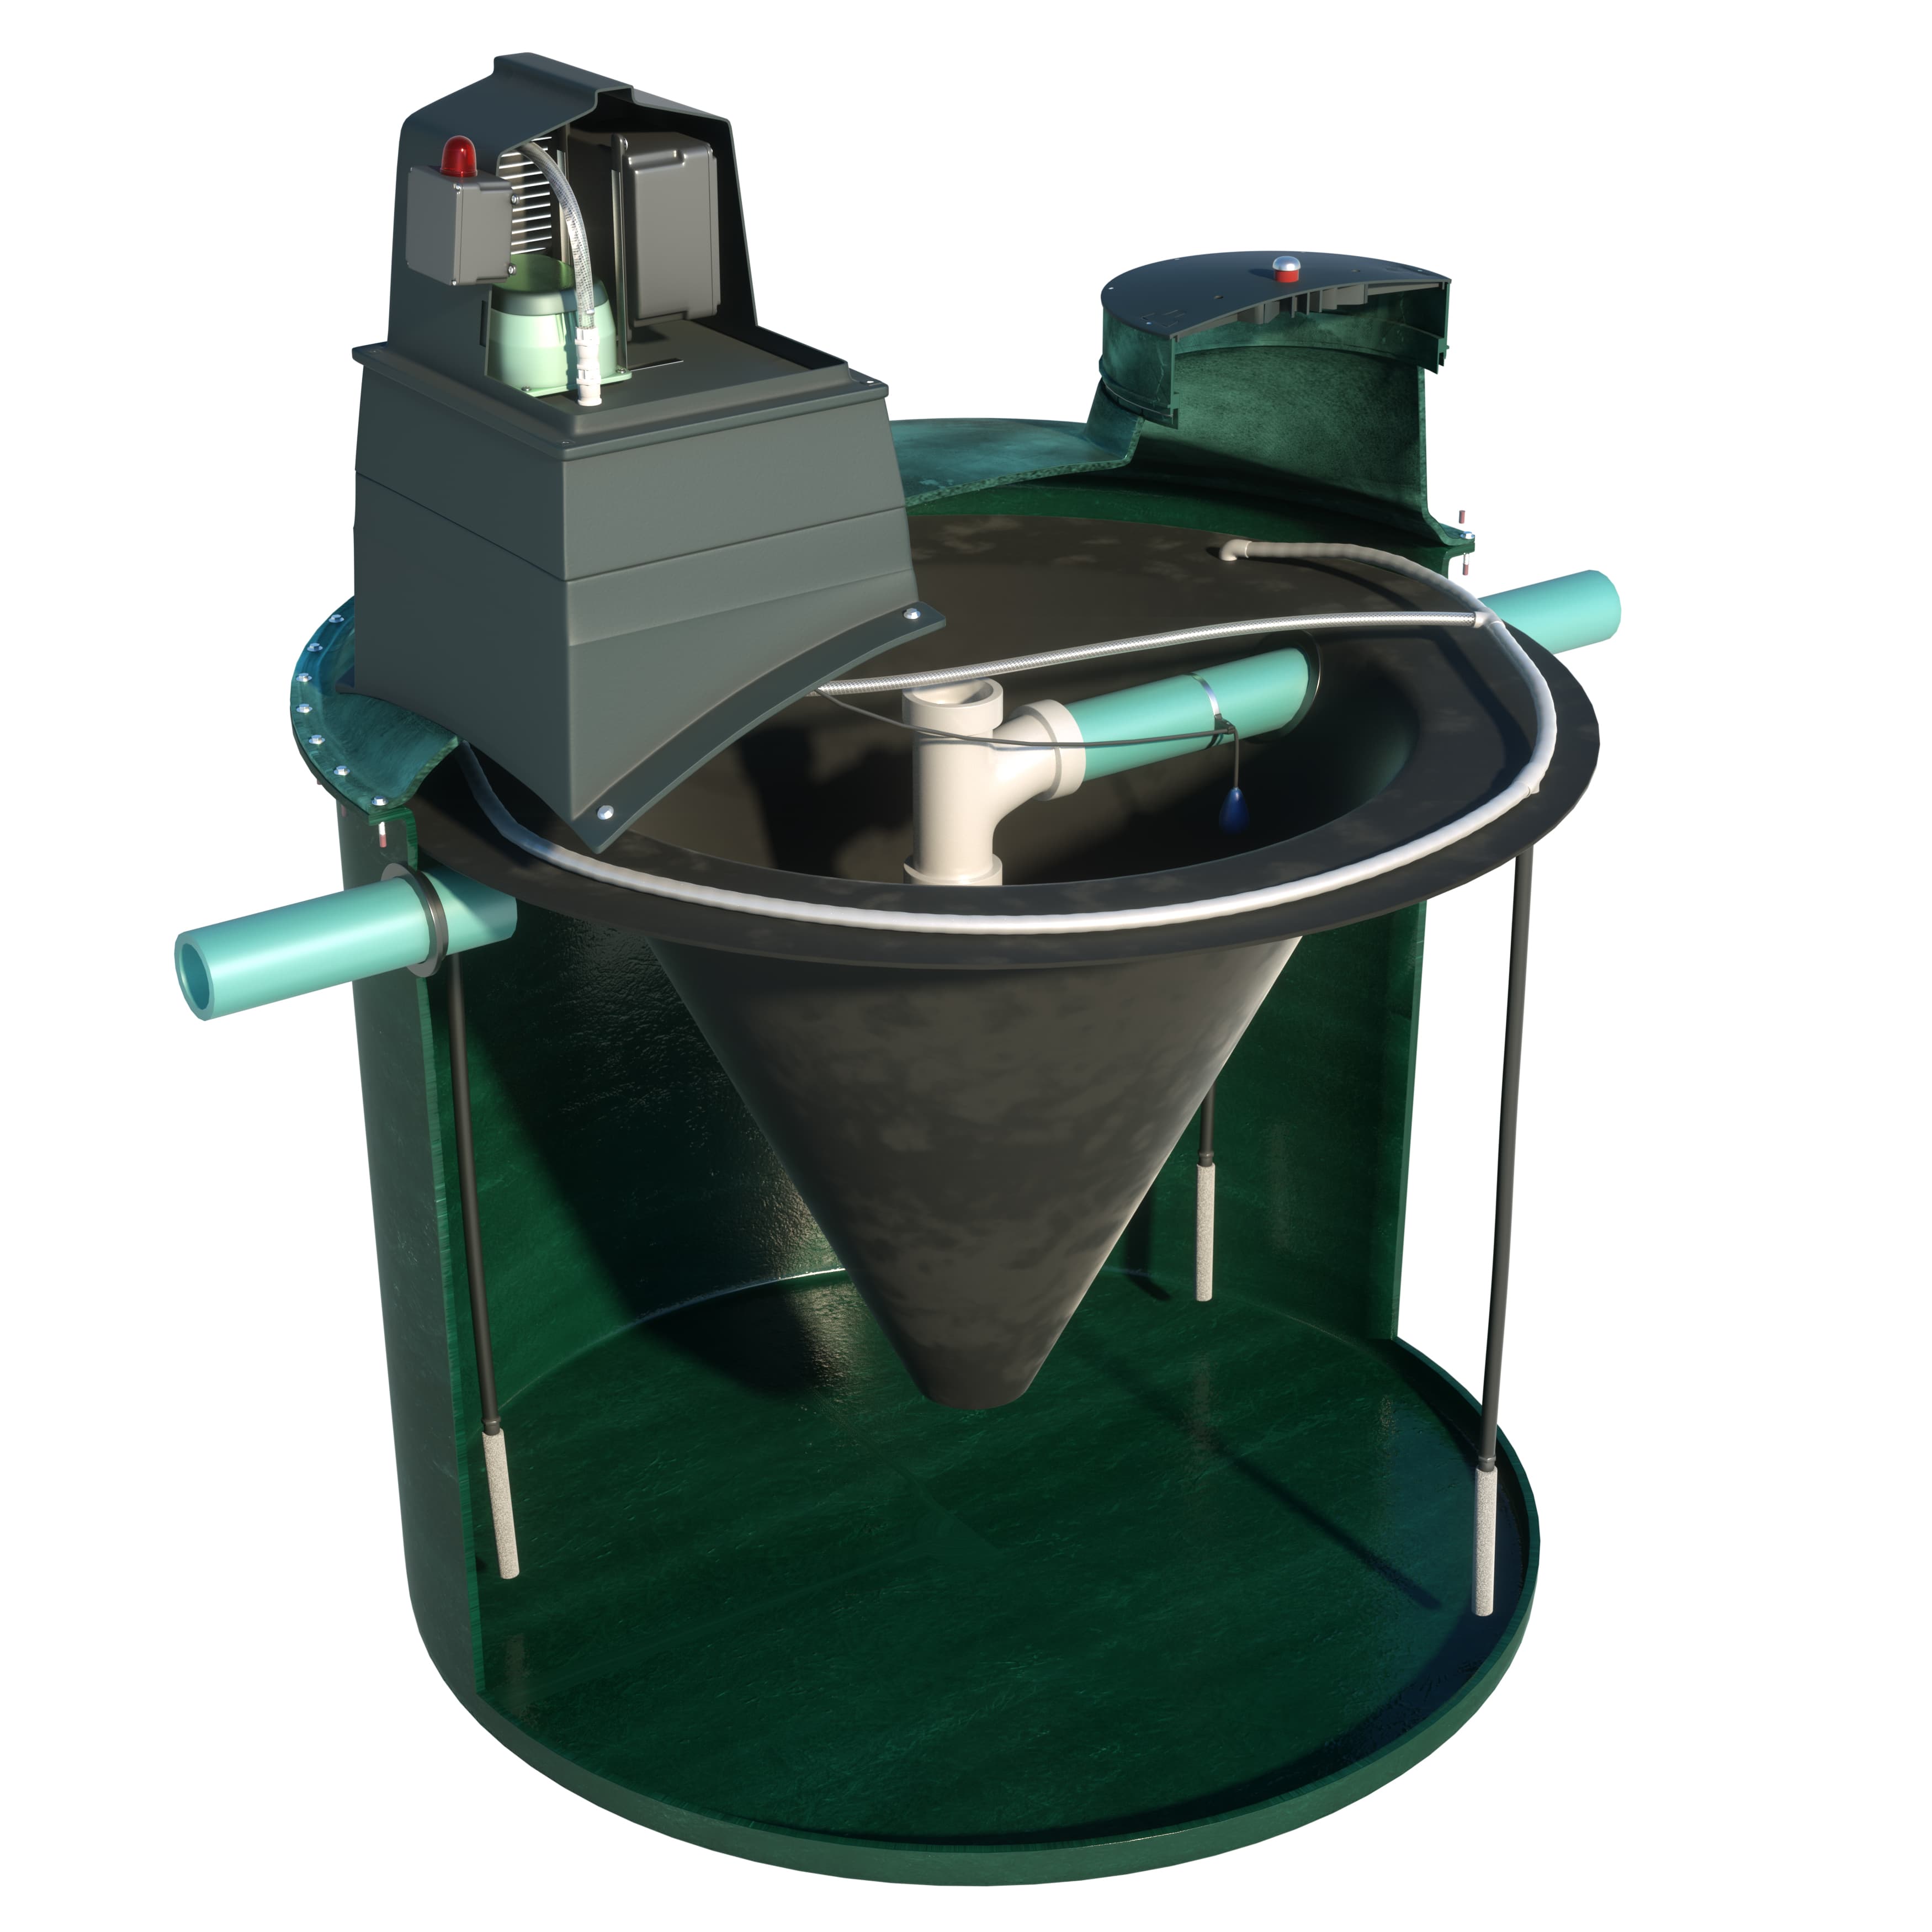 LPA500-1 Water Disposal System